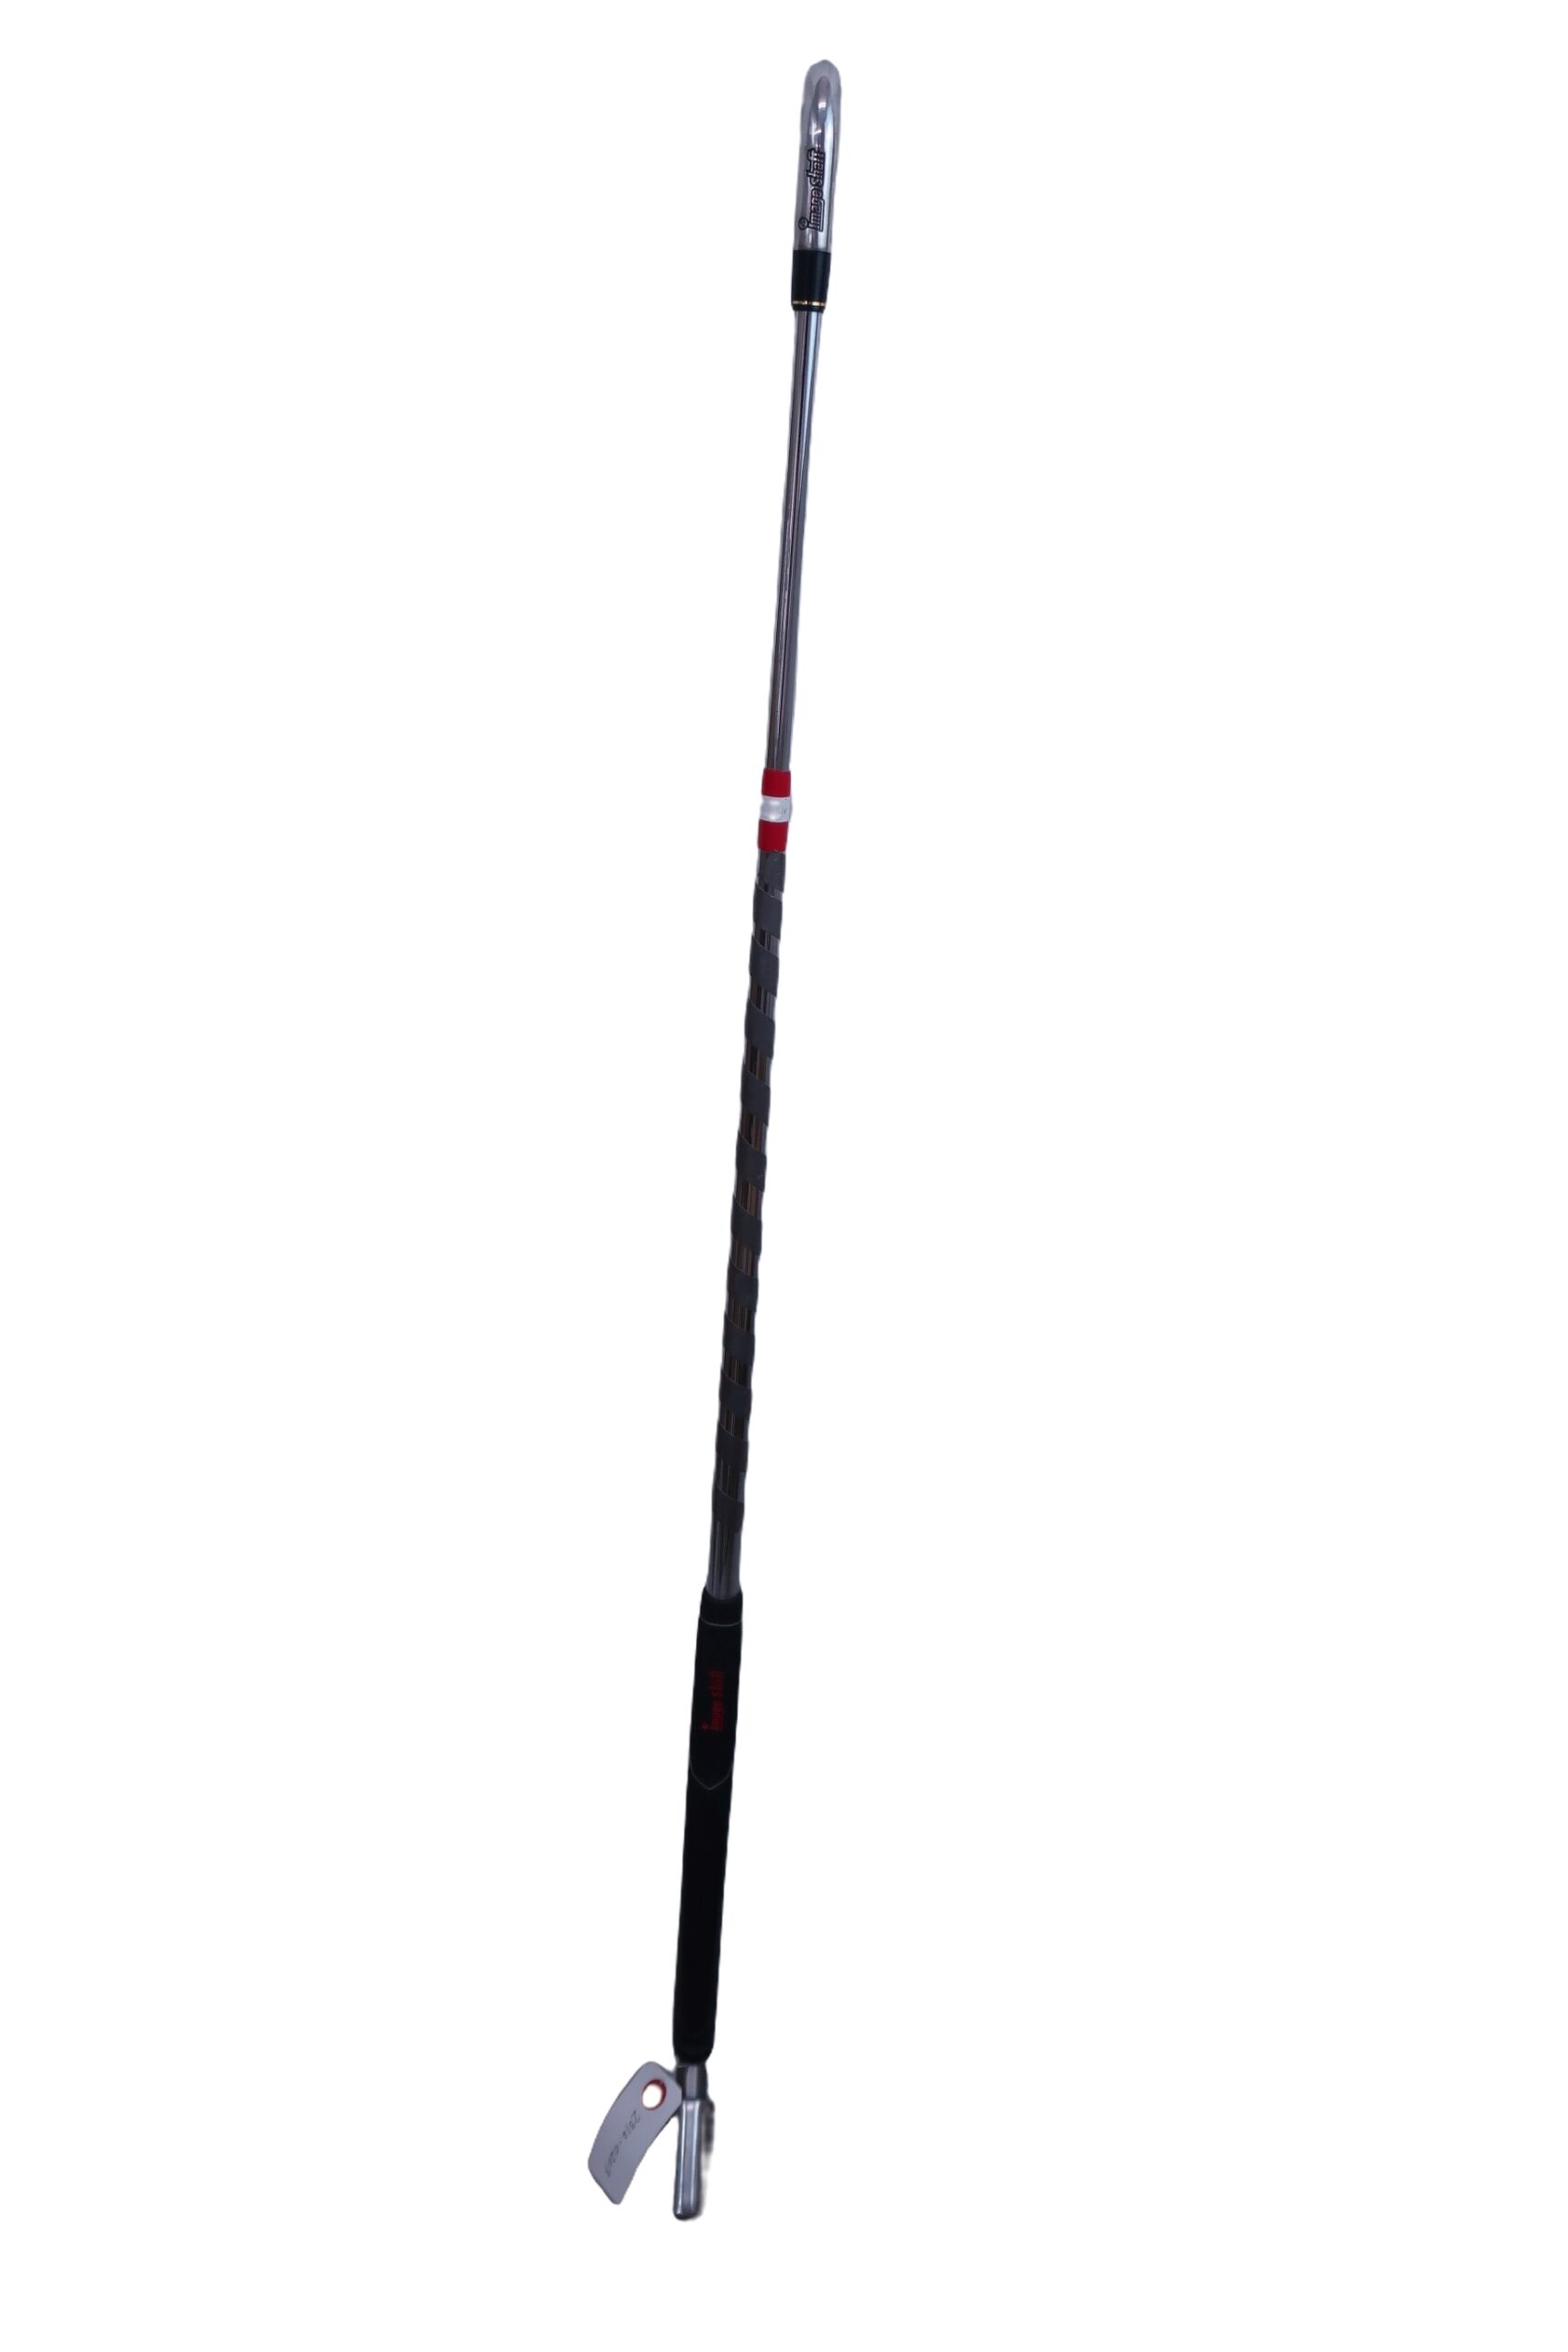 【新品未使用】イメージシャフト　Image shaft ゴルフ練習器具